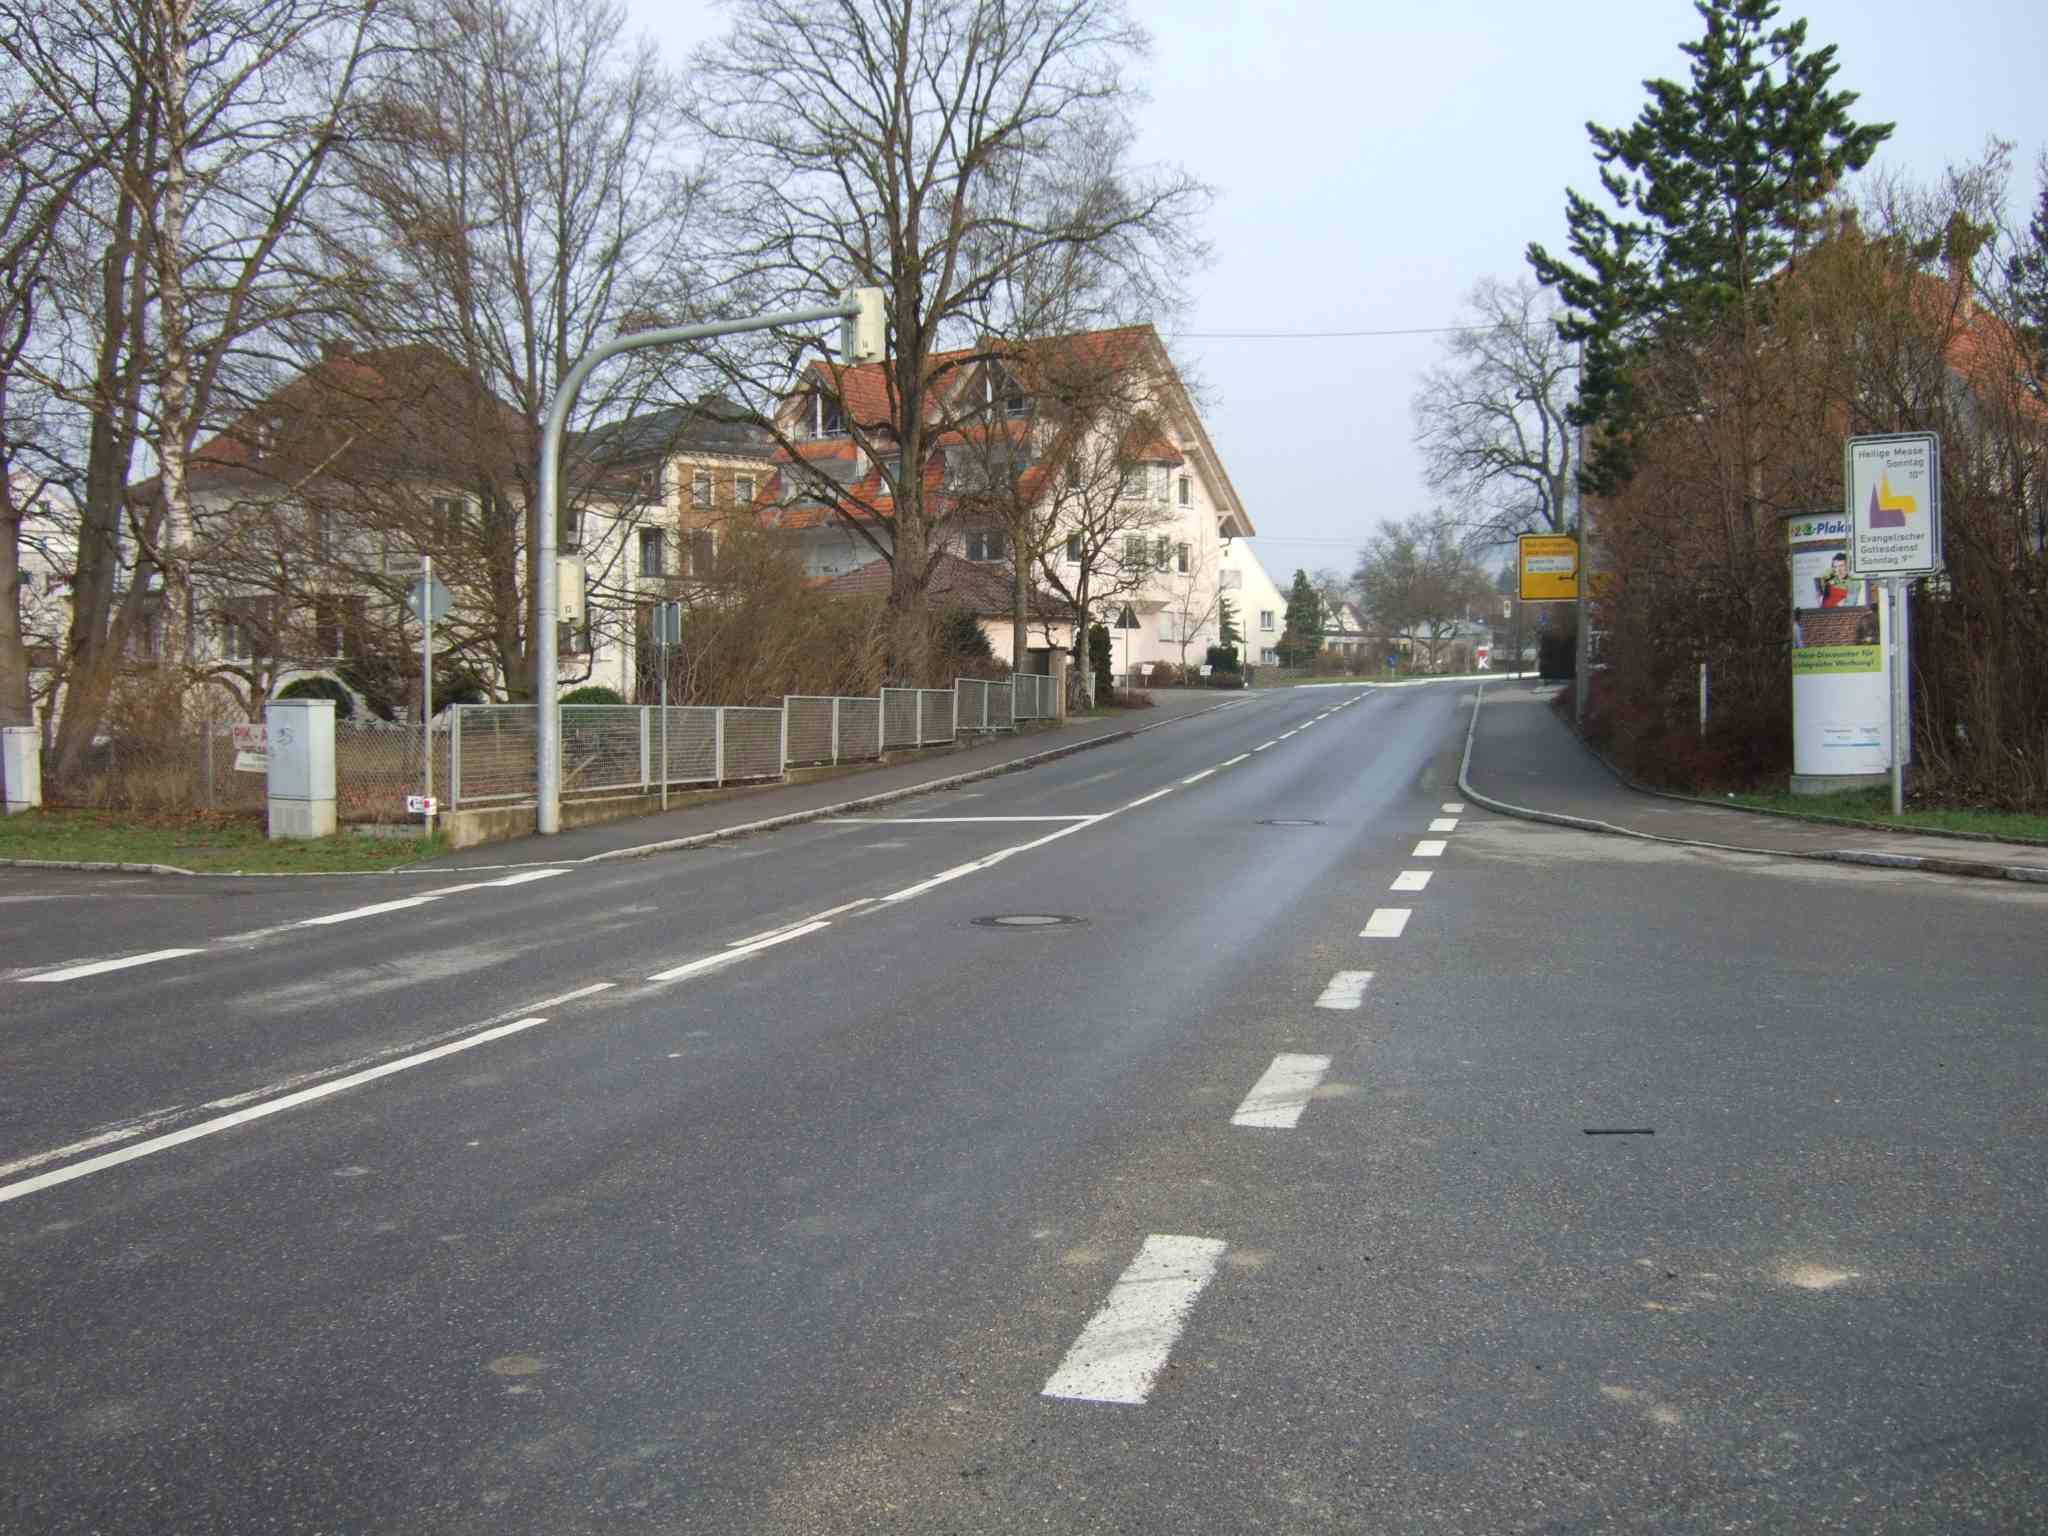 Bushaltestelle am Bhf Geisingen-West